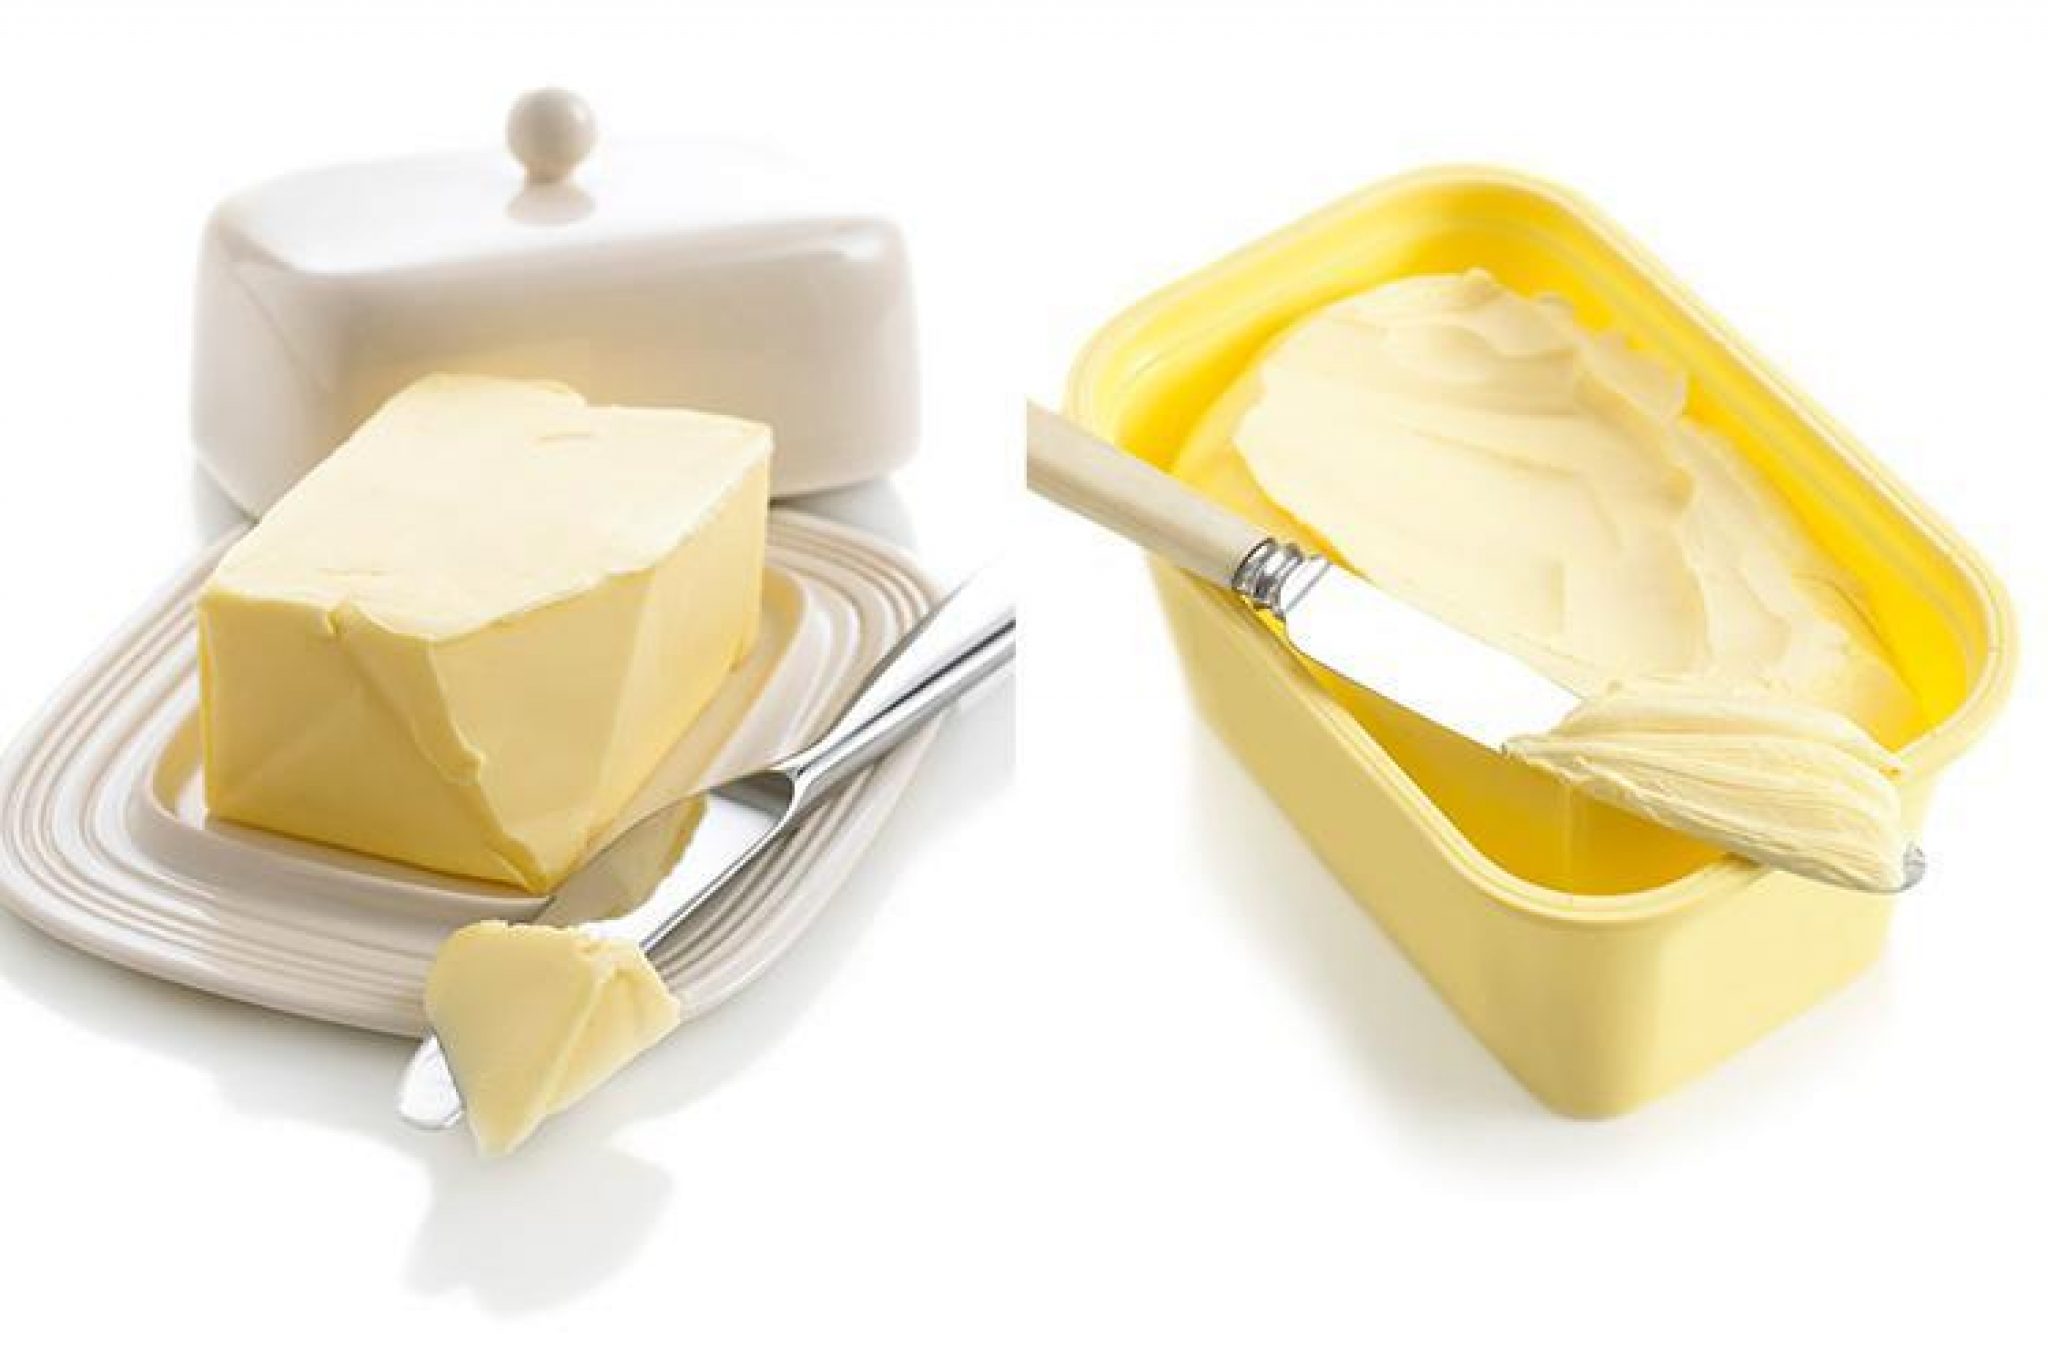 Is margarine gezonder dan boter?